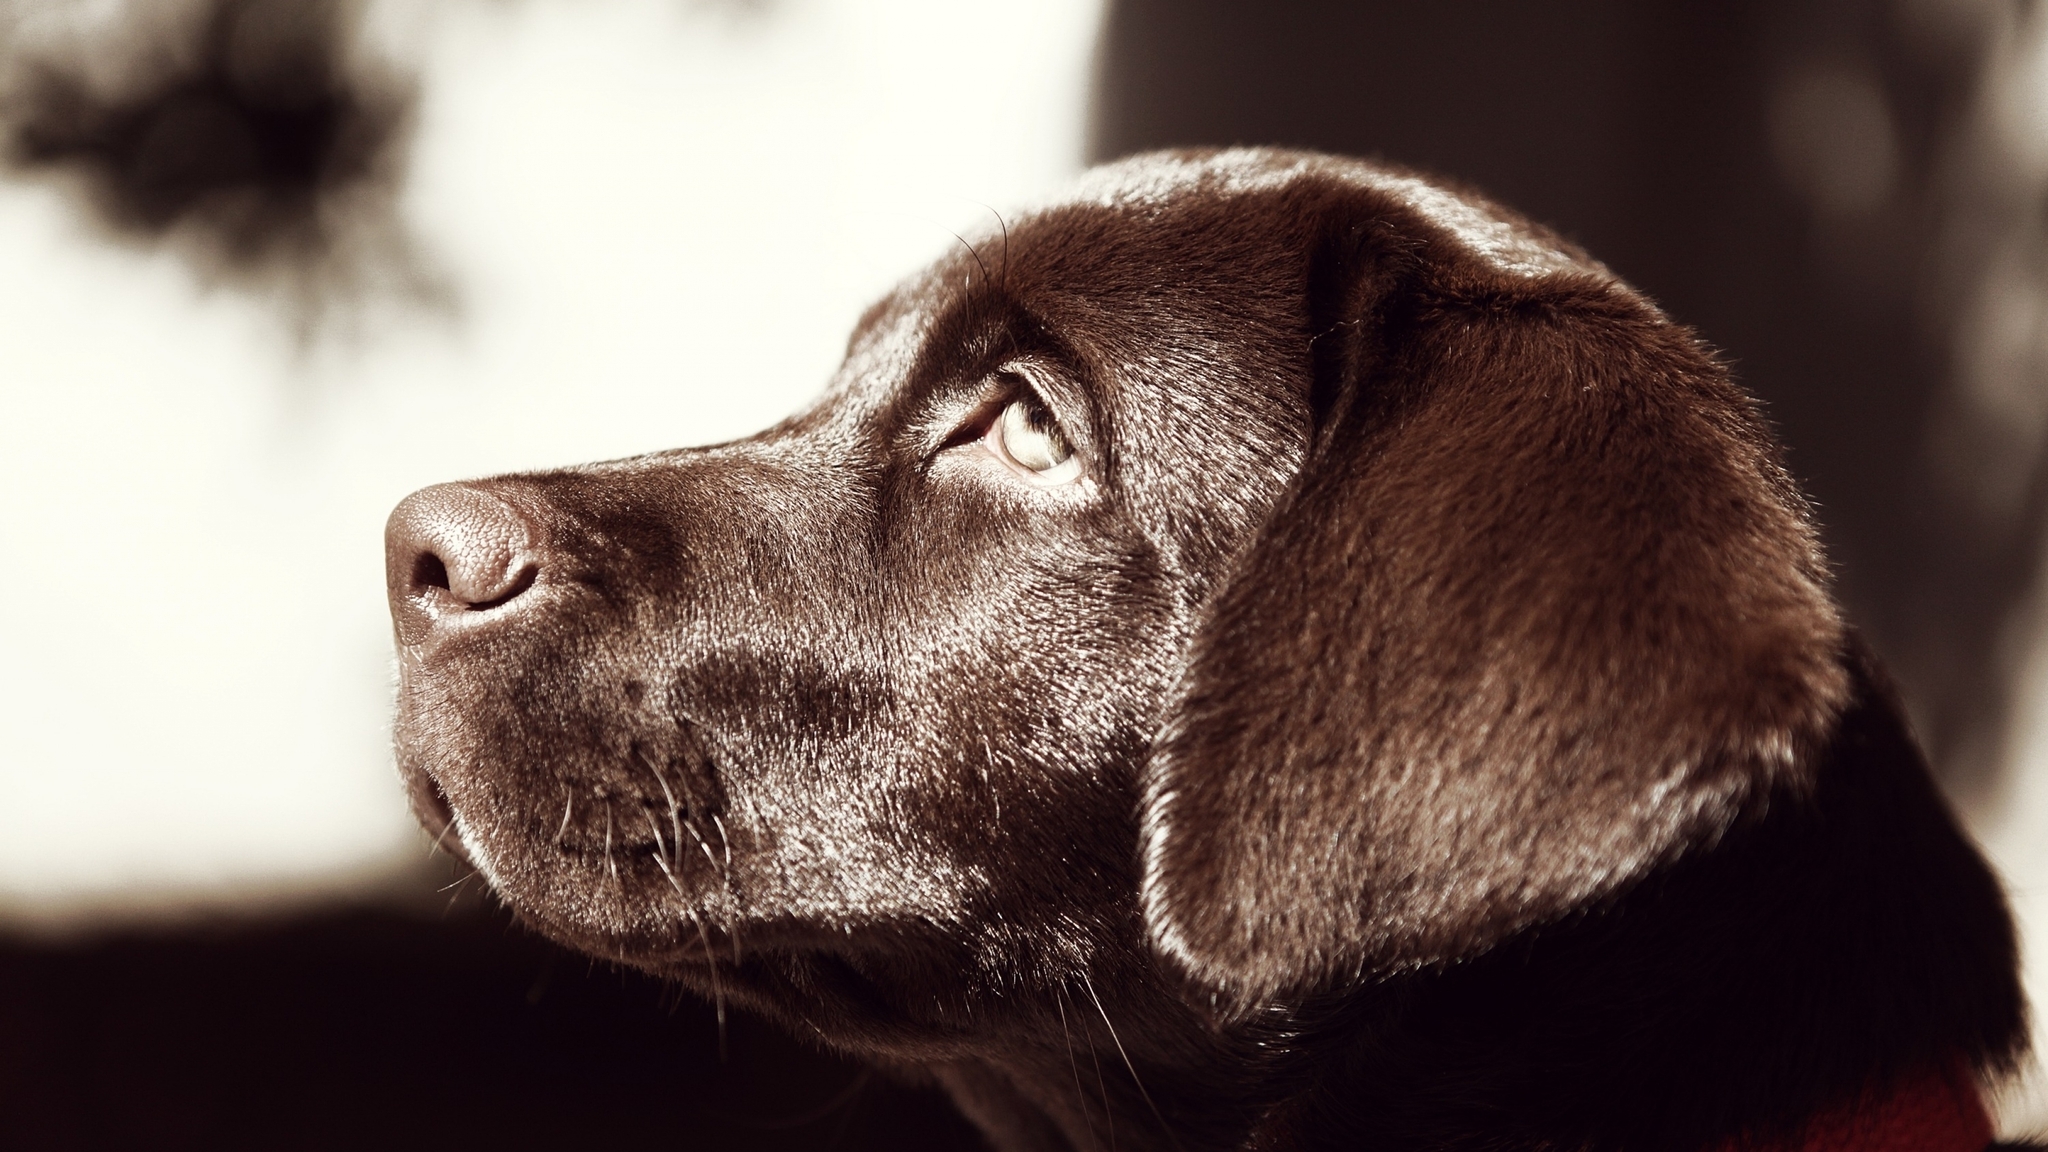 Image: Labrador, dog, dog, nose, eyes, ears, muzzle, profile, chocolate color